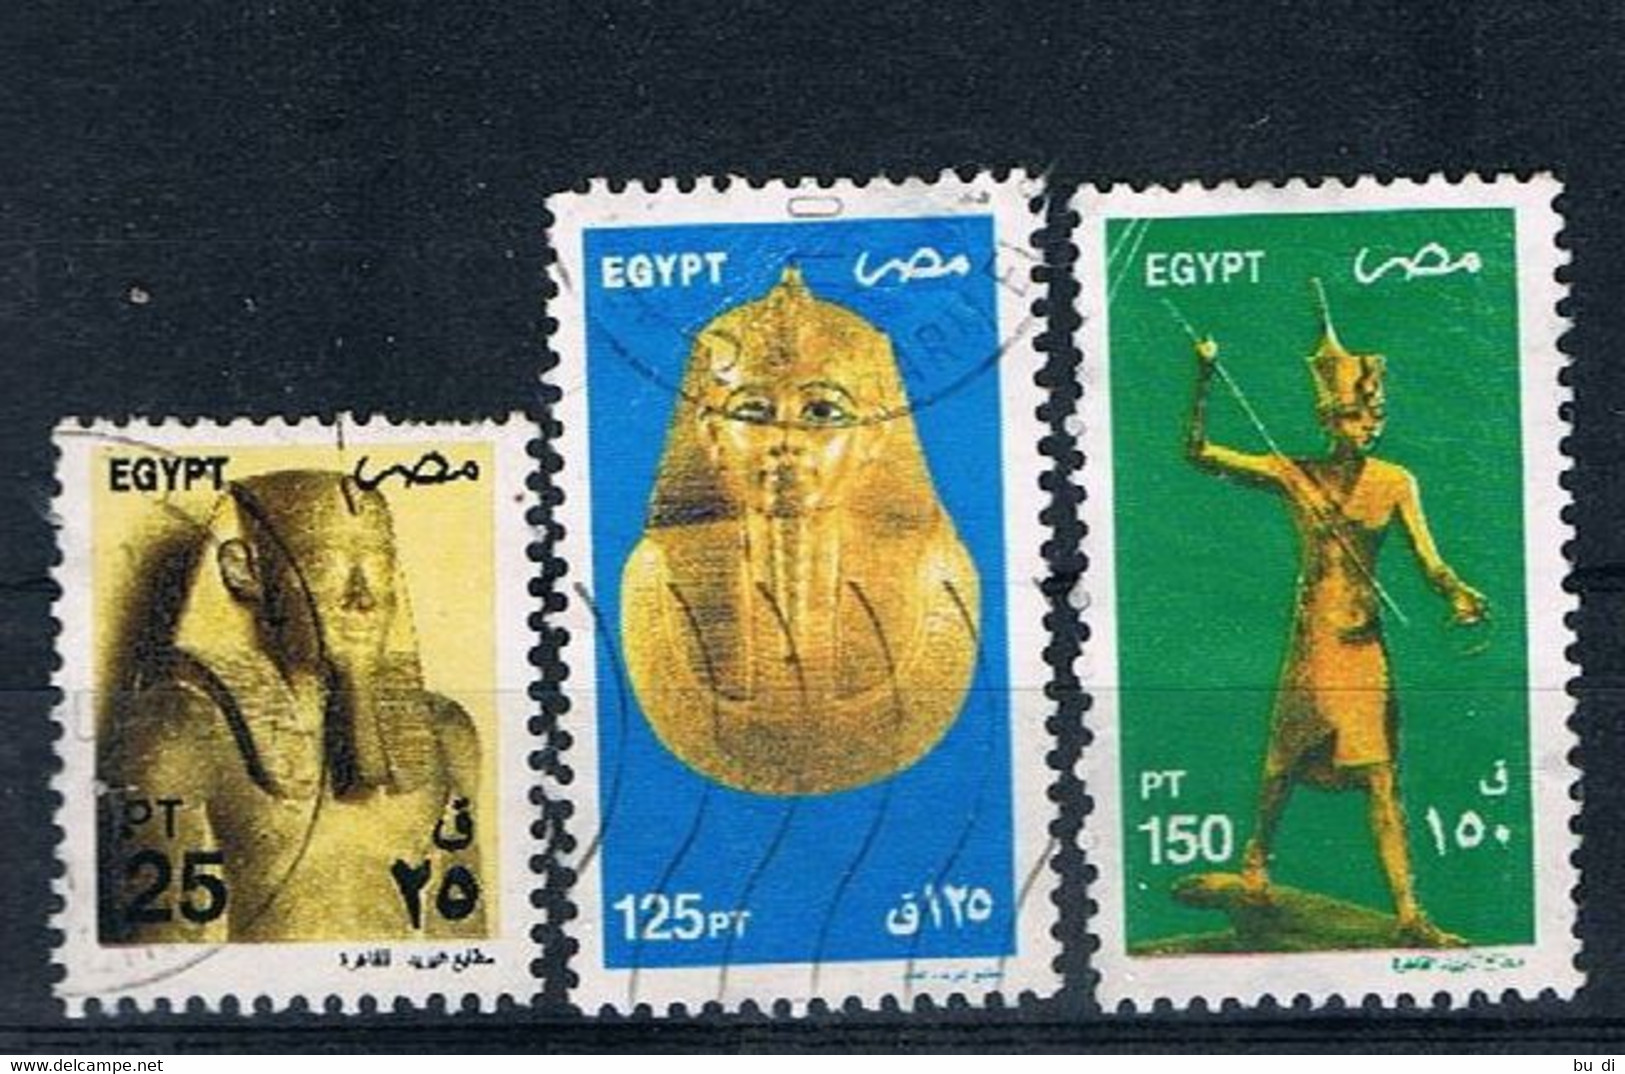 Ägypten - Egypt - 2081 2089 2090 - ägyptische Kunst - Statue, Totenmaske, U.a. Tut-ench Amun - Usados